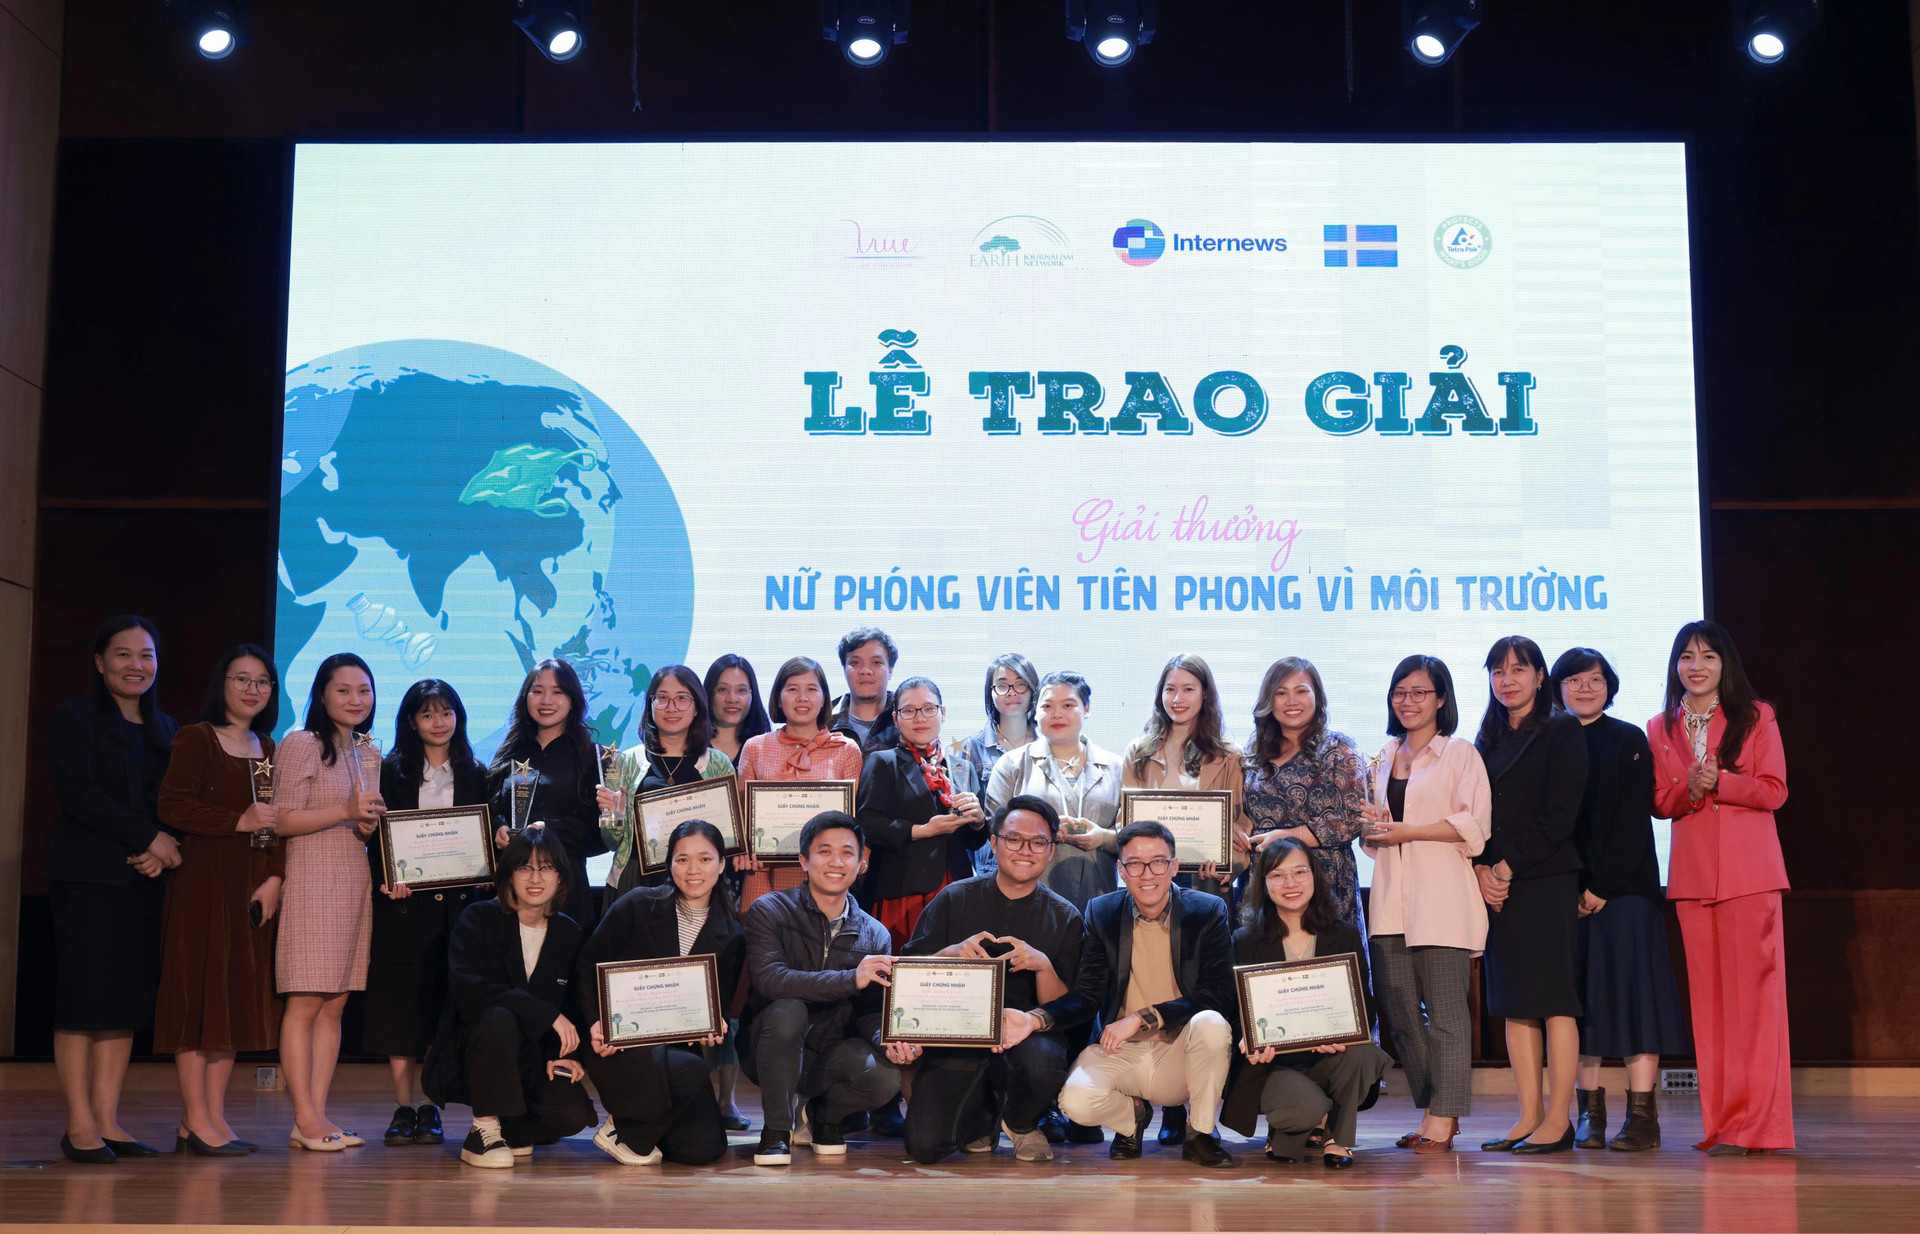 Trao 11 giải thưởng báo chí “Nữ phóng viên tiên phong vì môi trường”